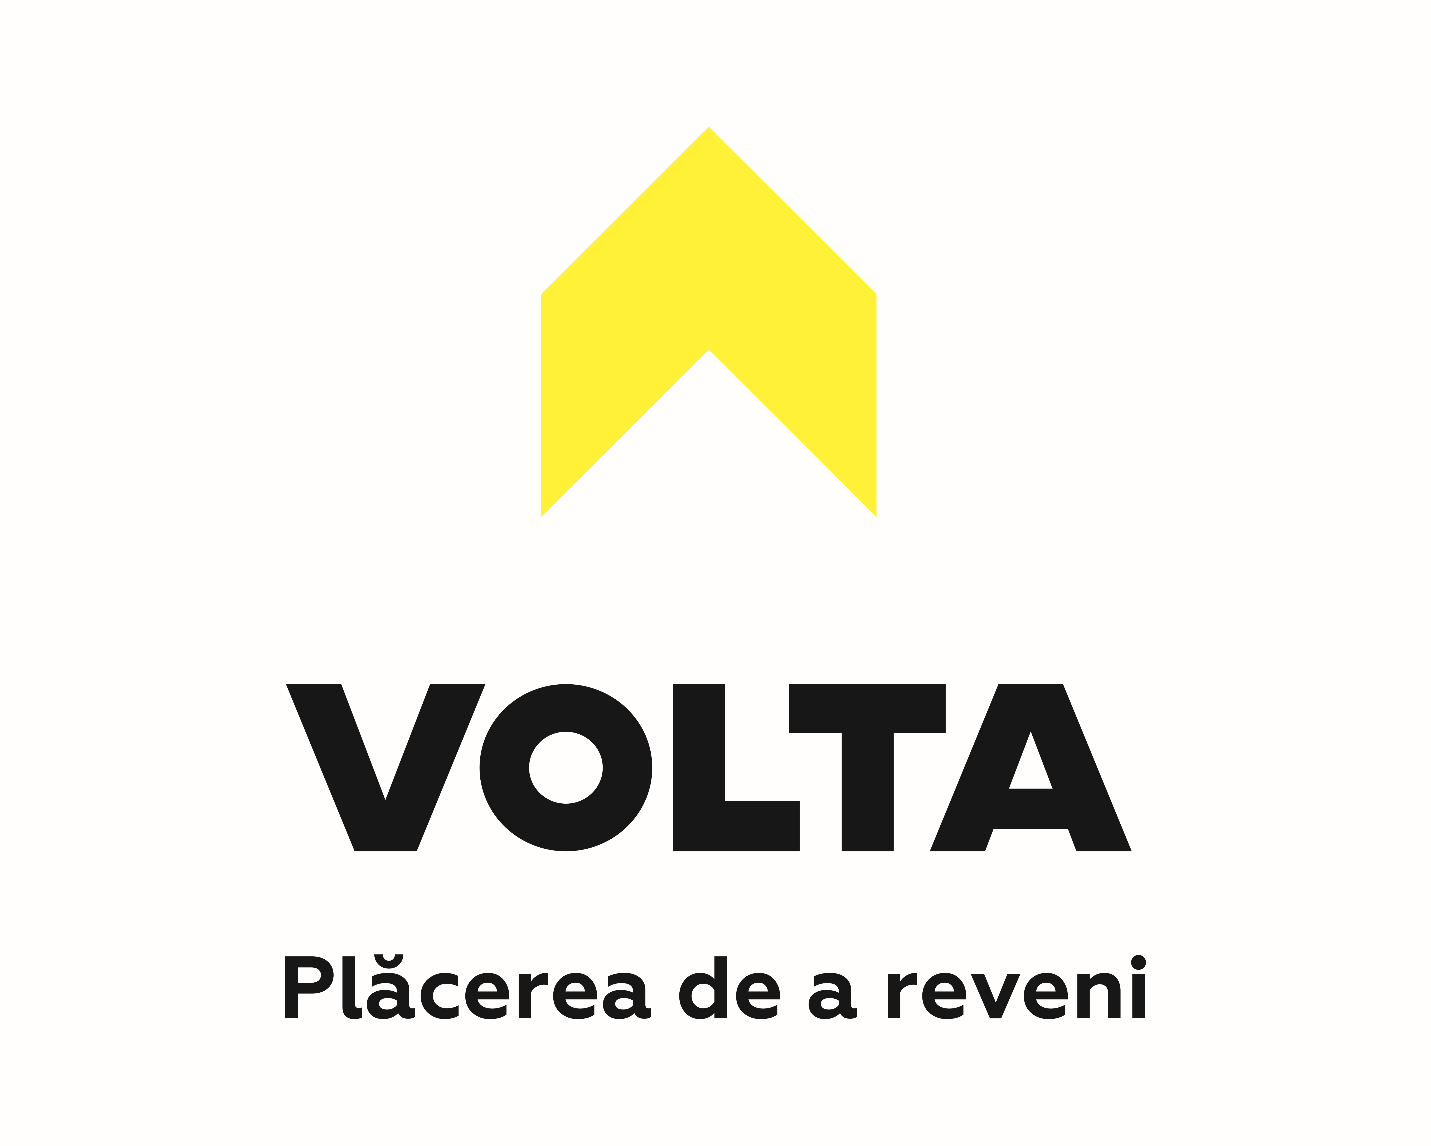 \\192.168.0.2\MK-BackUp\MK-DEPARTMENT\PROIECTE\Logo Volta\Volta LOGO (242x194).tif